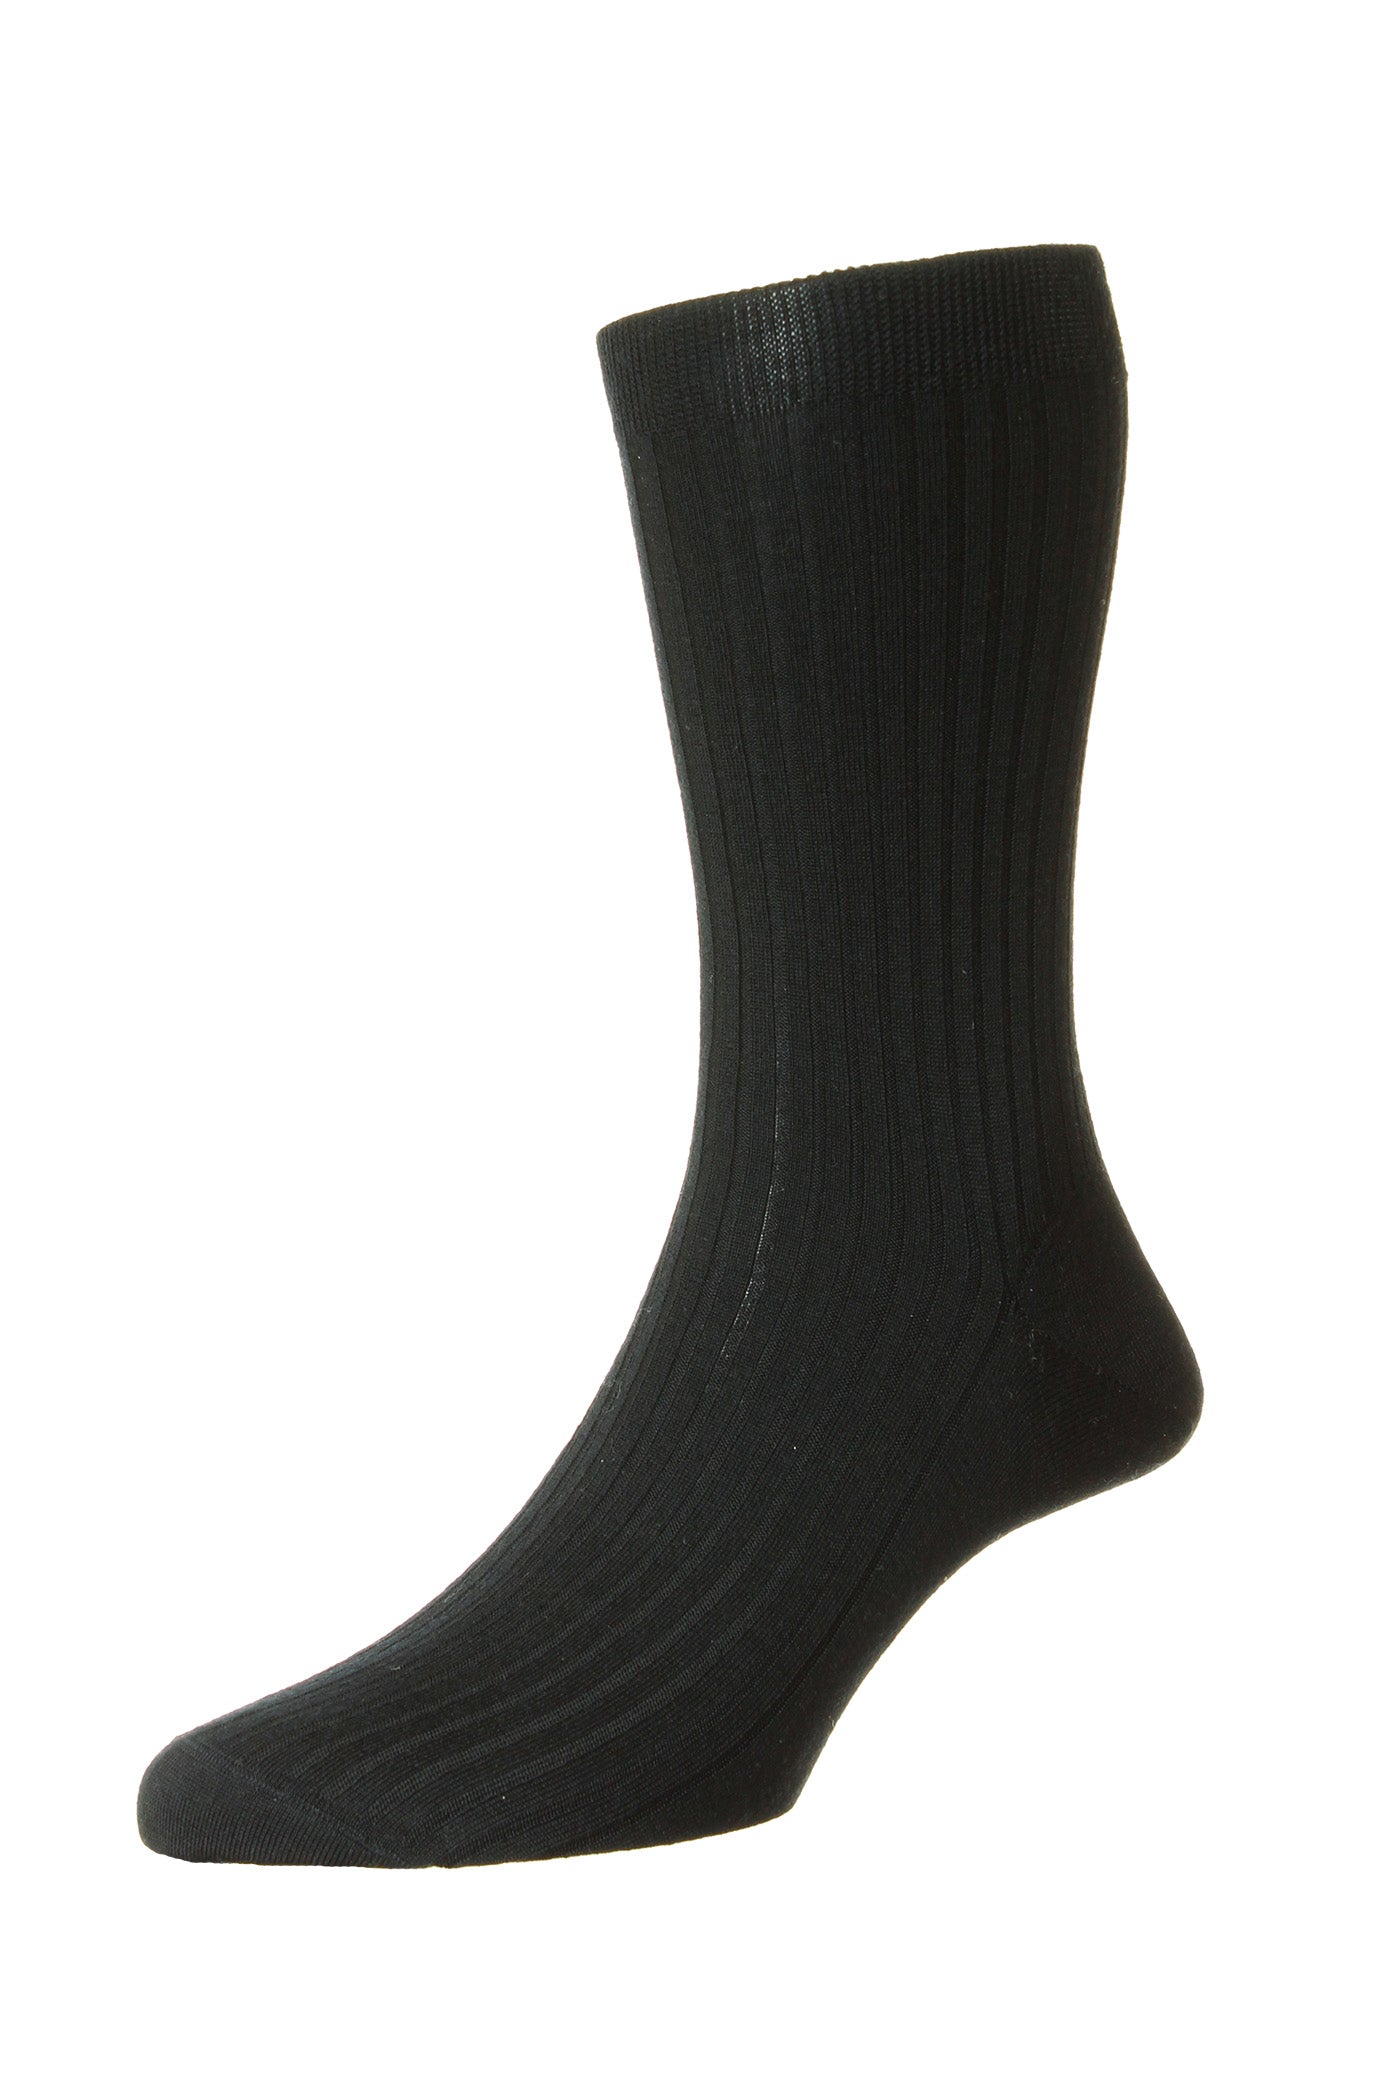 Pantherella Kangley Merino Super 100s Socks Dk Grey